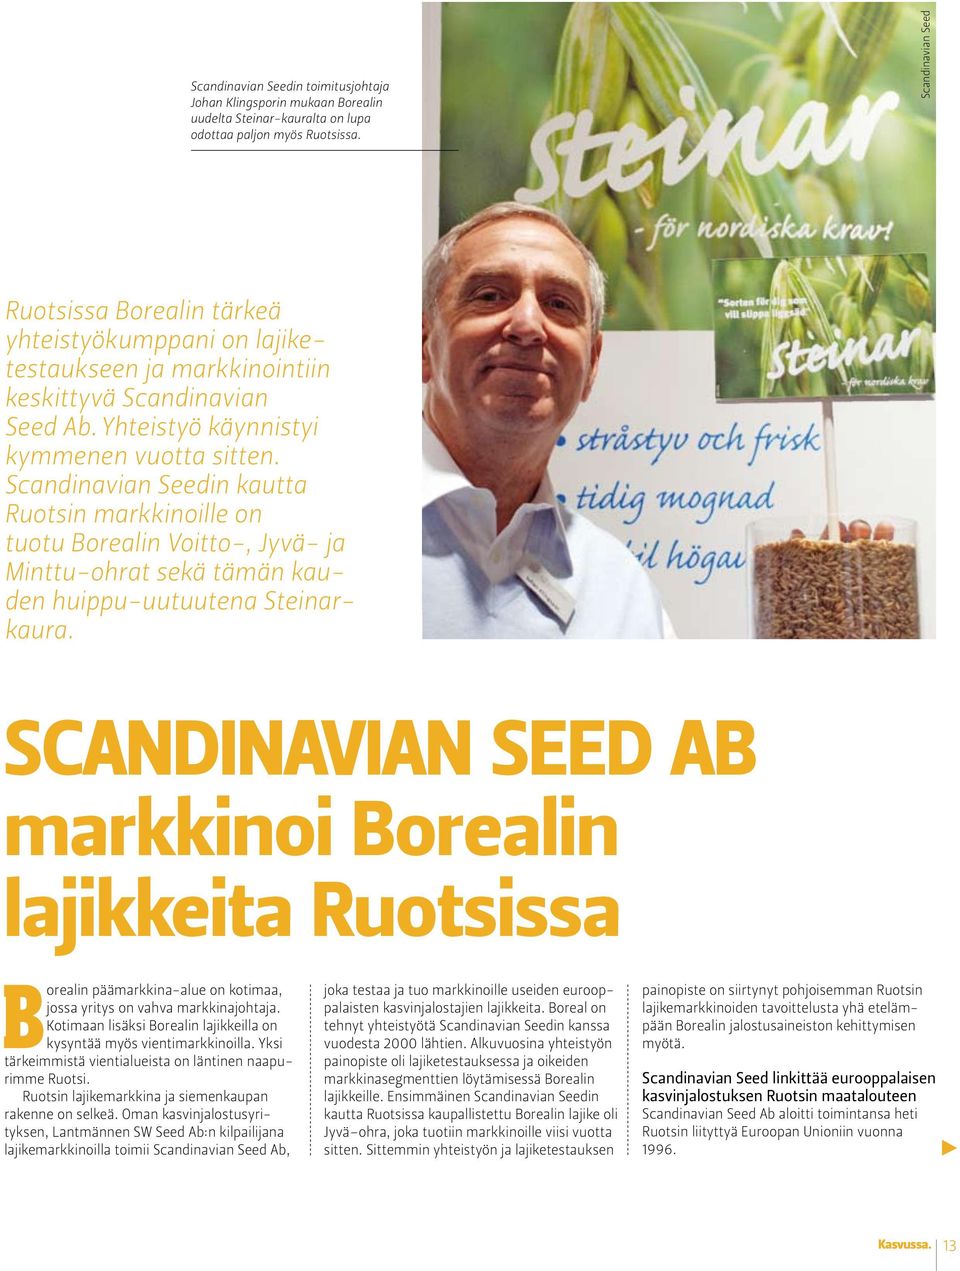 Scandinavian Seedin kautta Ruotsin markkinoille on tuotu Borealin Voitto-, Jyvä- ja Minttu-ohrat sekä tämän kauden huippu-uutuutena Steinarkaura.